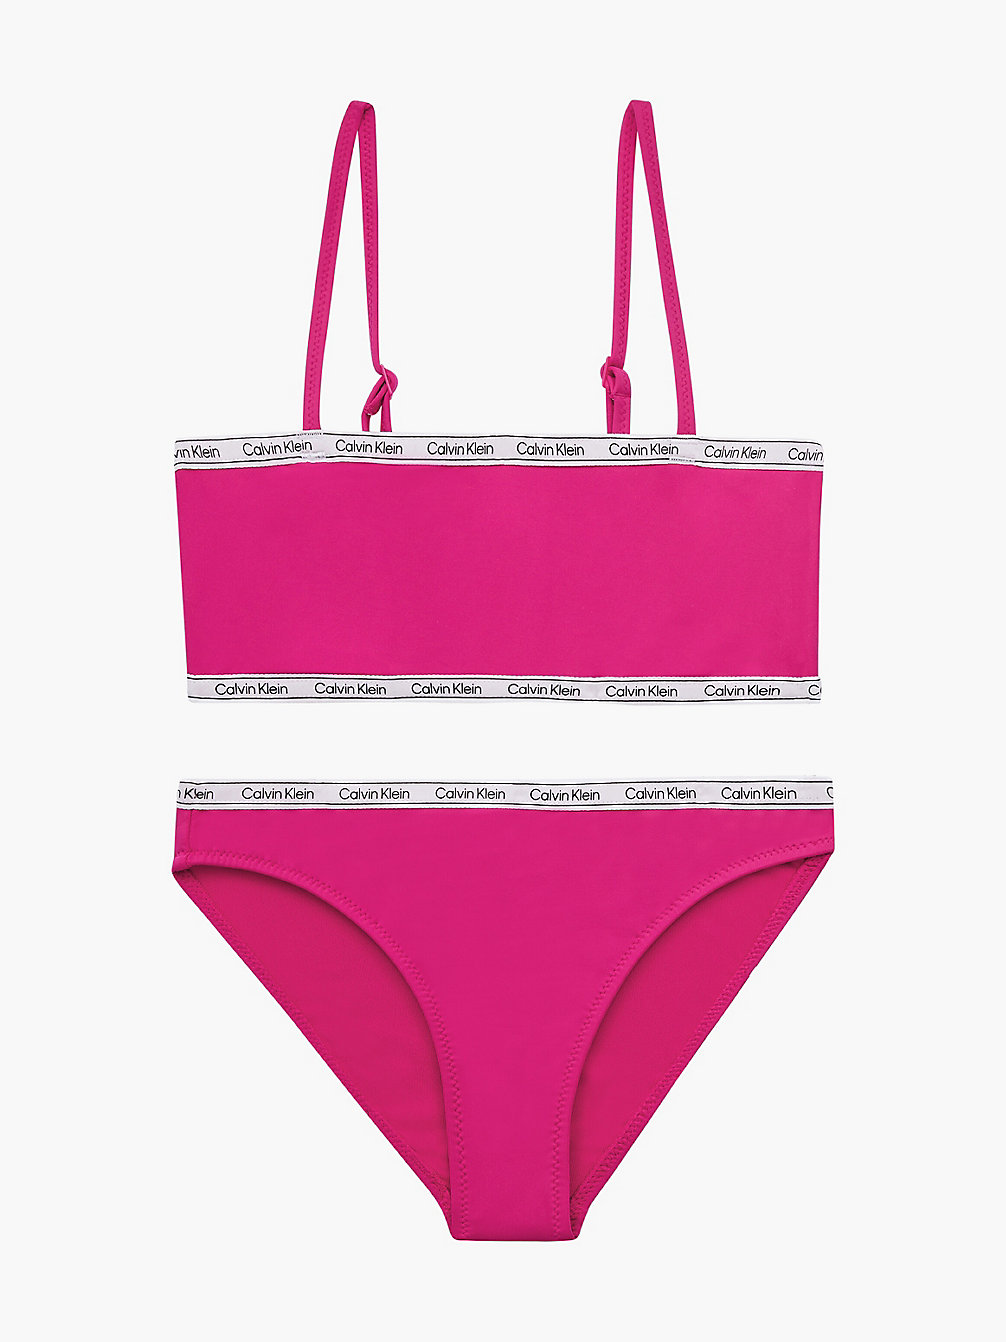 ROYAL PINK > Bikini-Set Mit Bralette Für Mädchen - Logo Tape > undefined girls - Calvin Klein